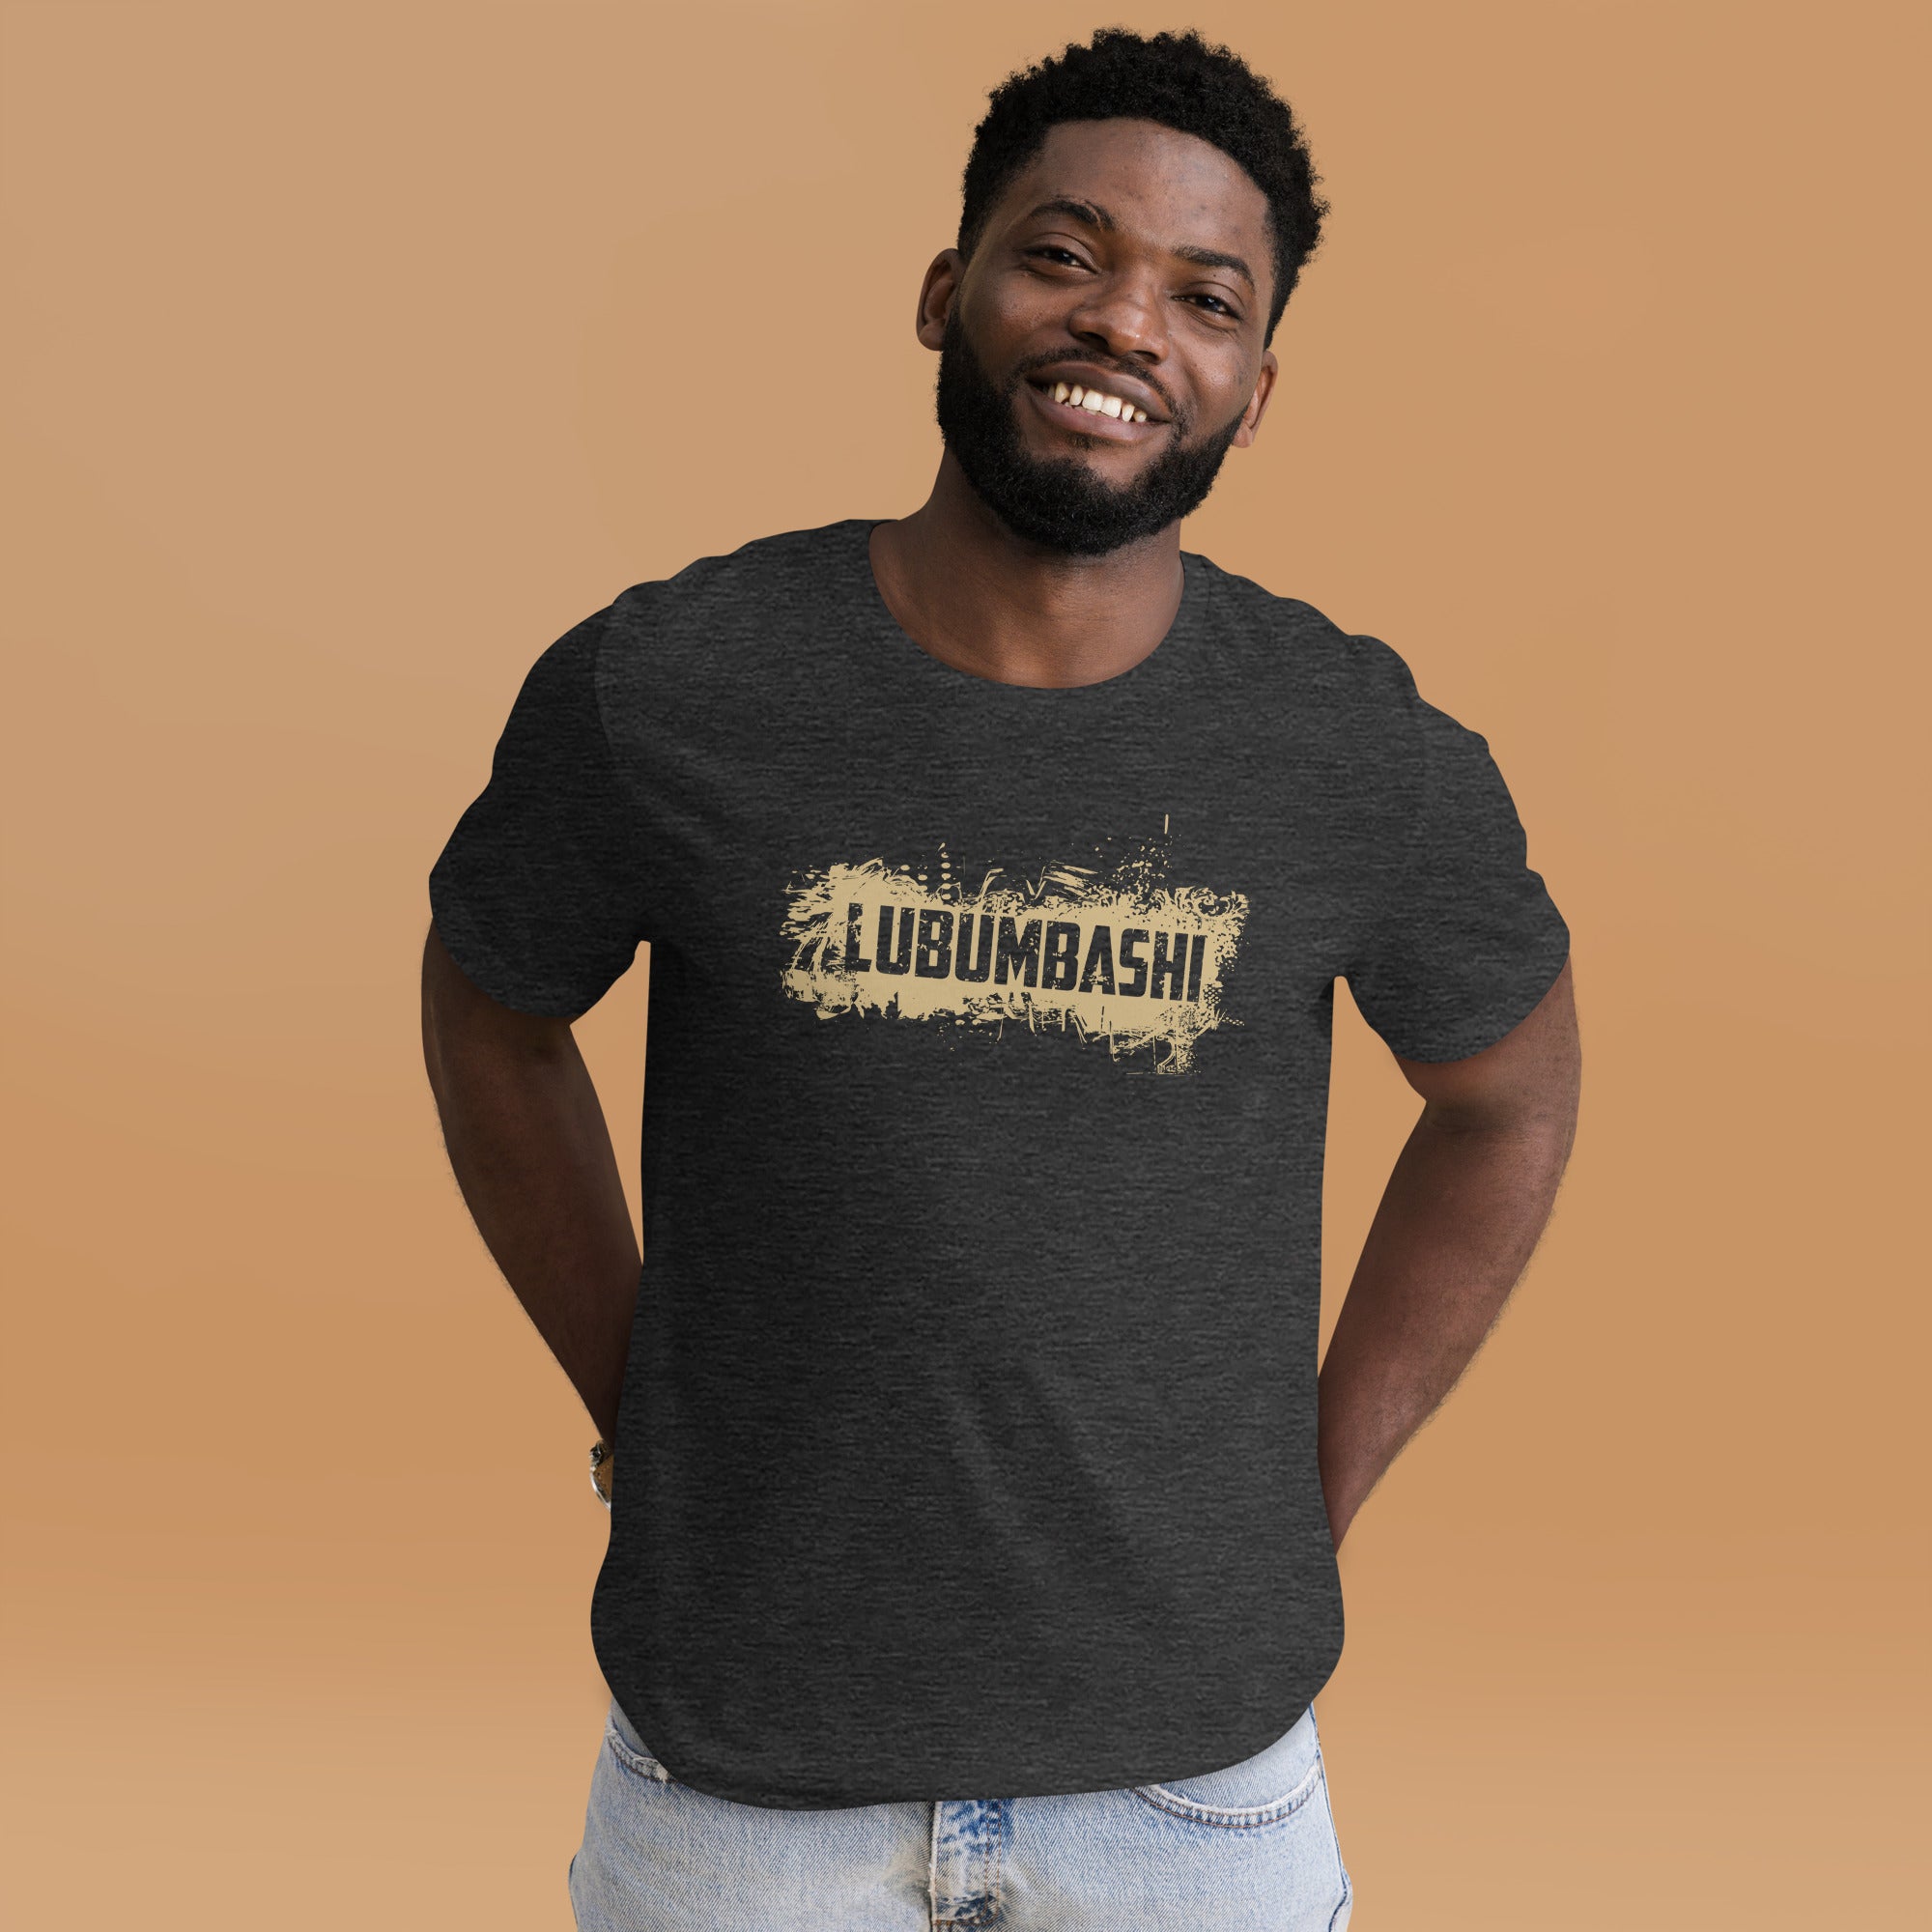 GentleGrip - "Lubumbashi"